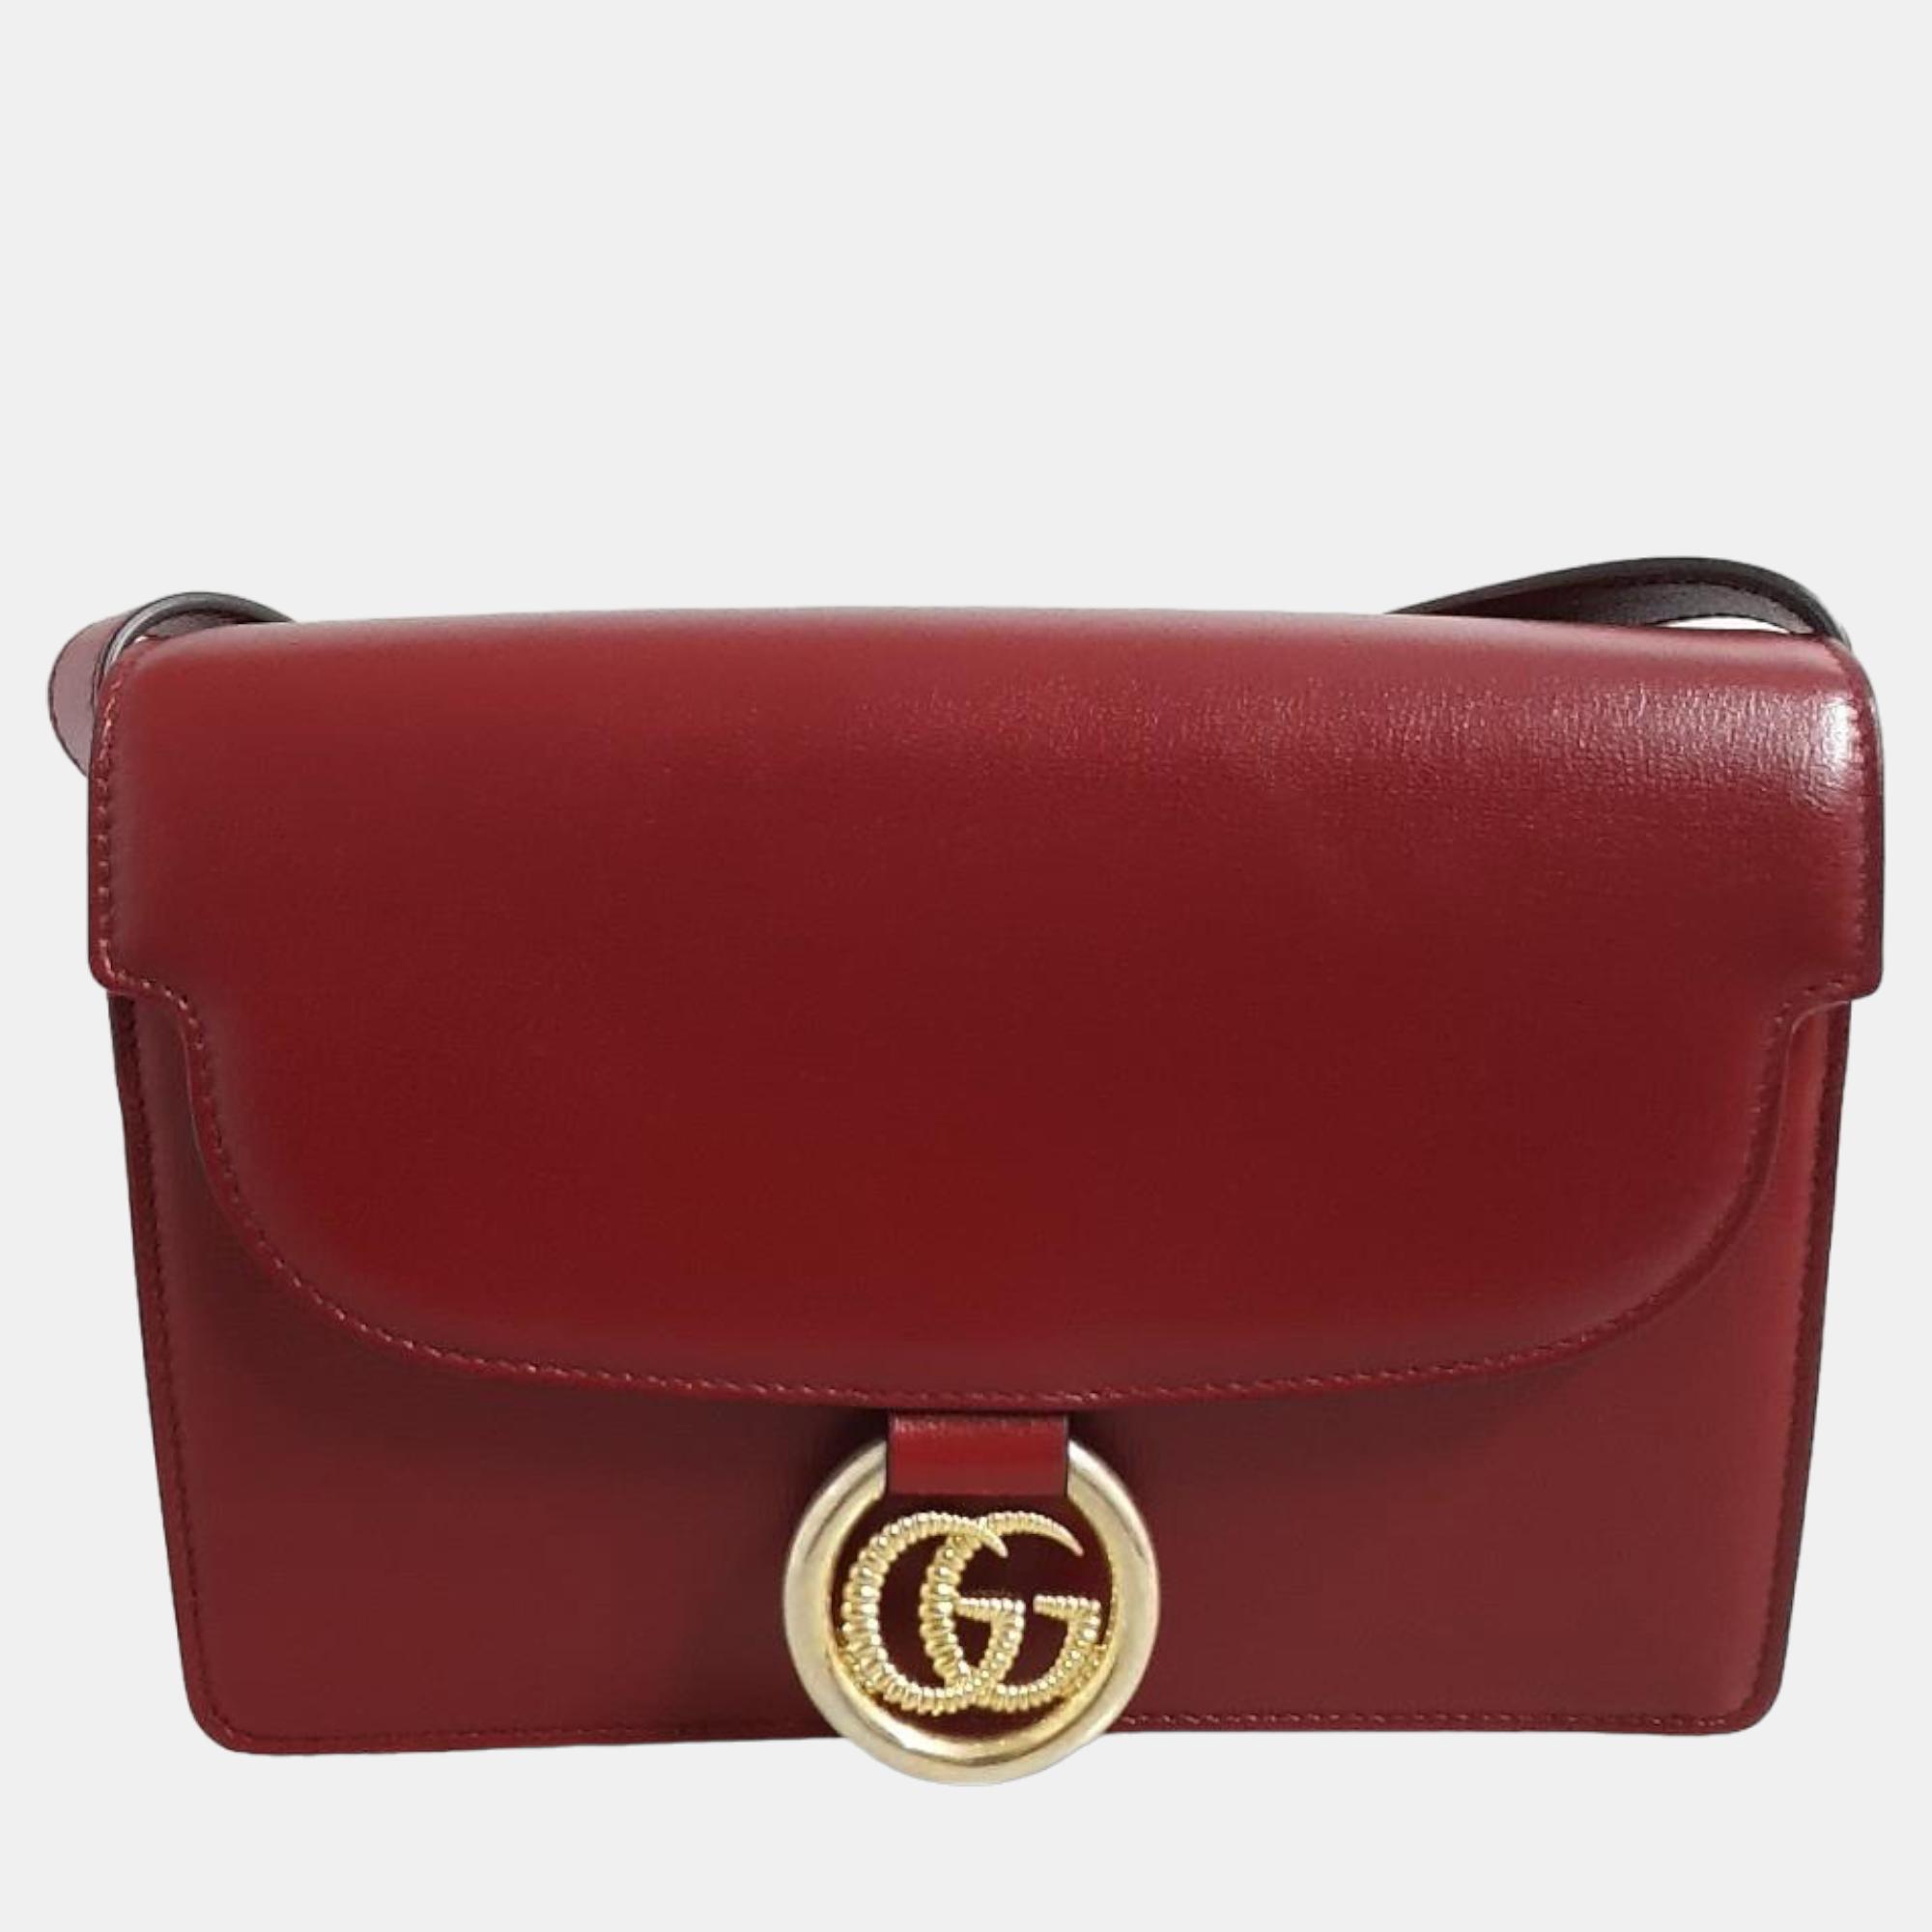 Pre-owned Gucci Burgundy Leather Shoulder Bag (589474)